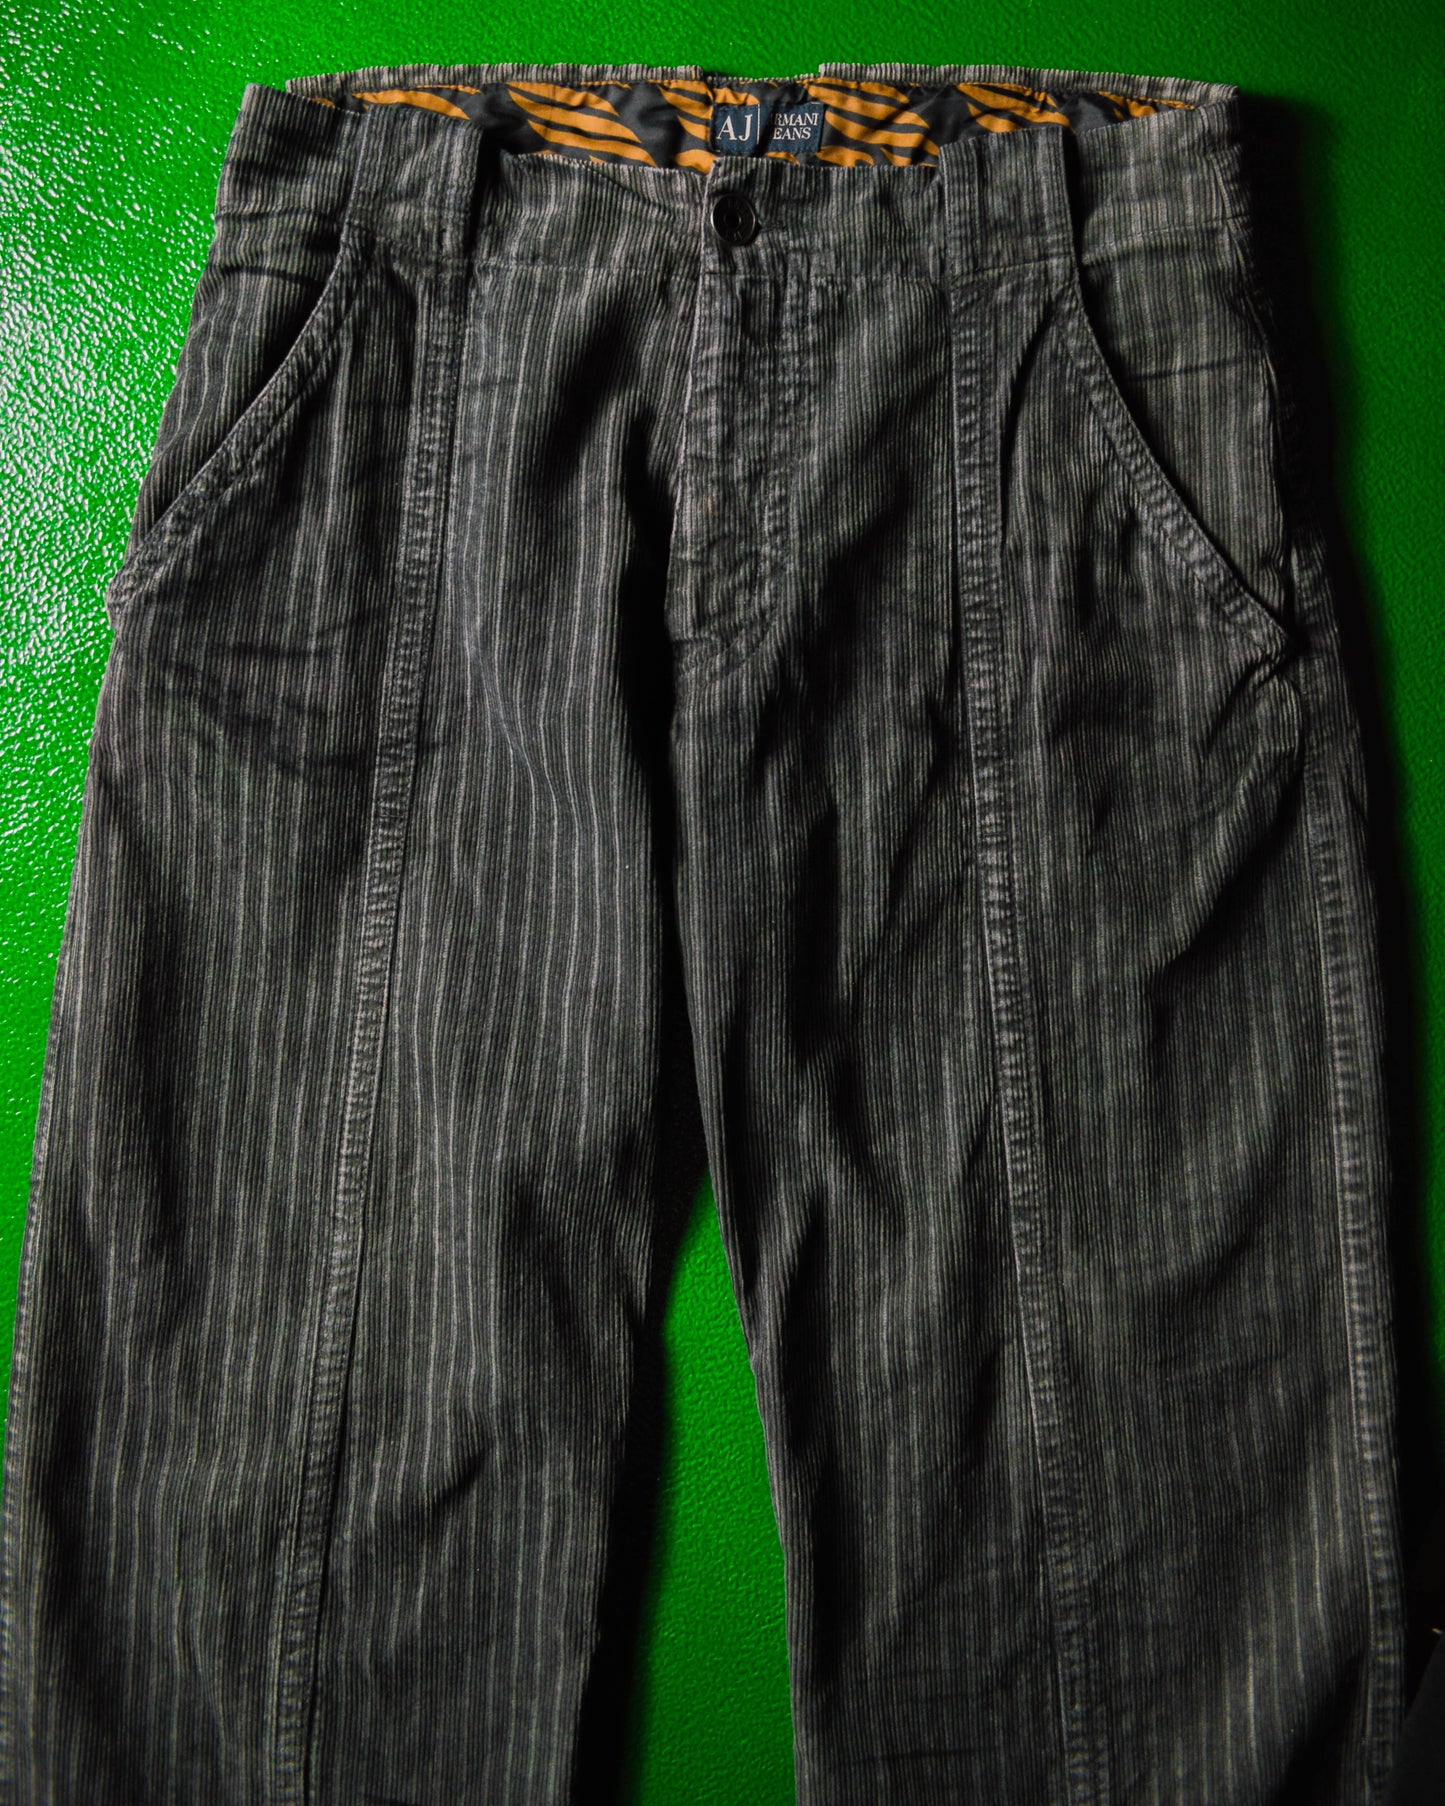 Faux Patina Print Grey Corduroy Tiger Pattern Waist Band Pants (~32~)